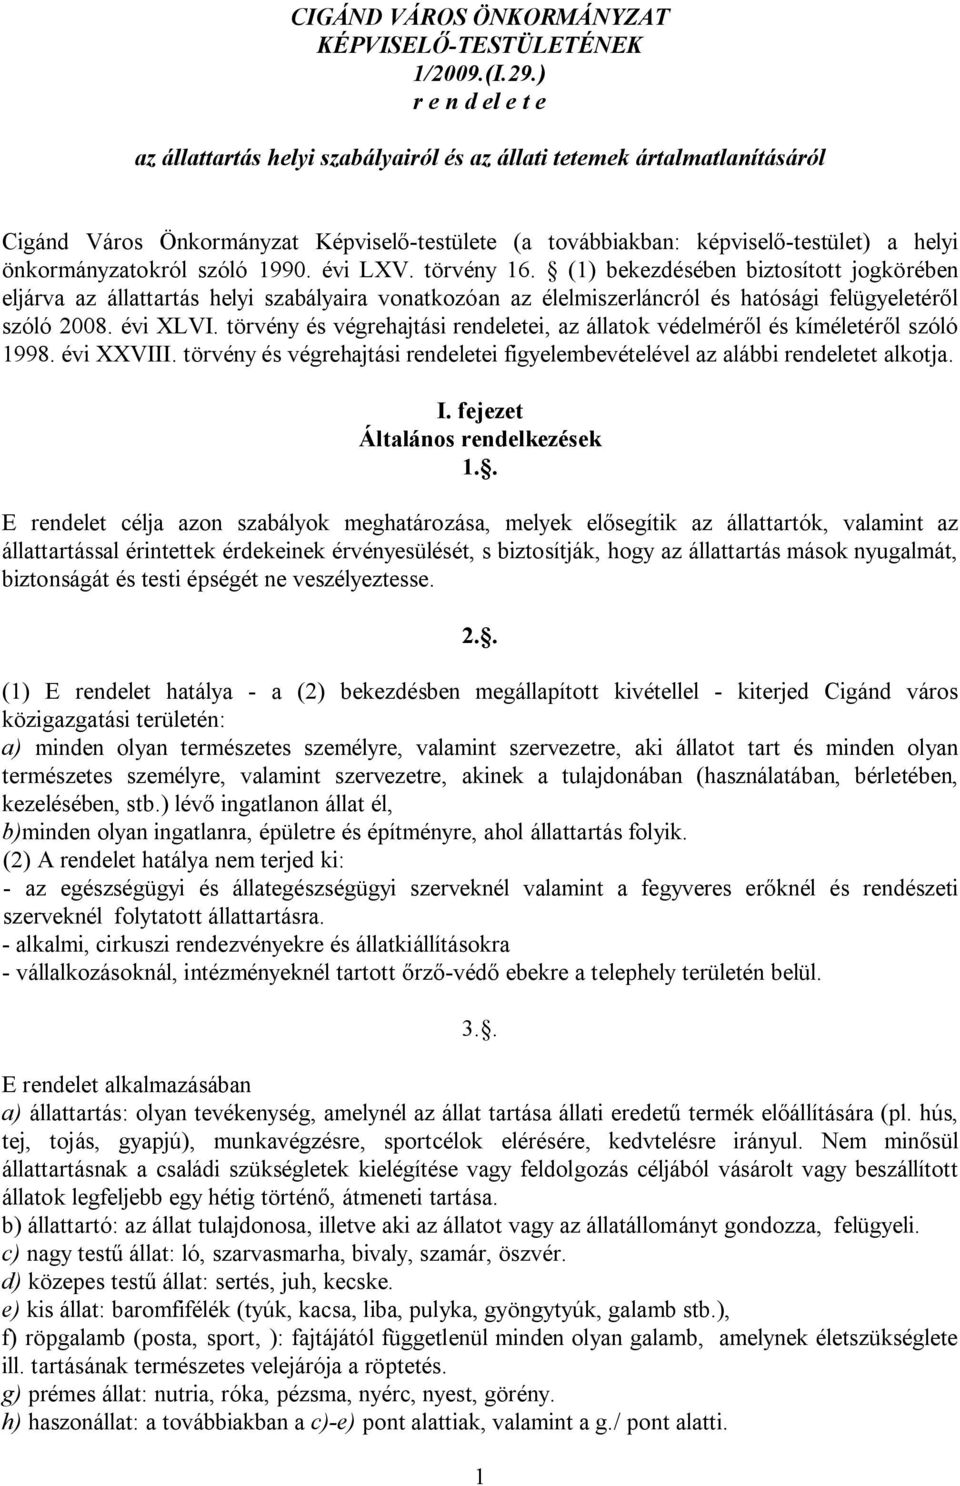 önkormányzatokról szóló 1990. évi LXV. törvény 16.